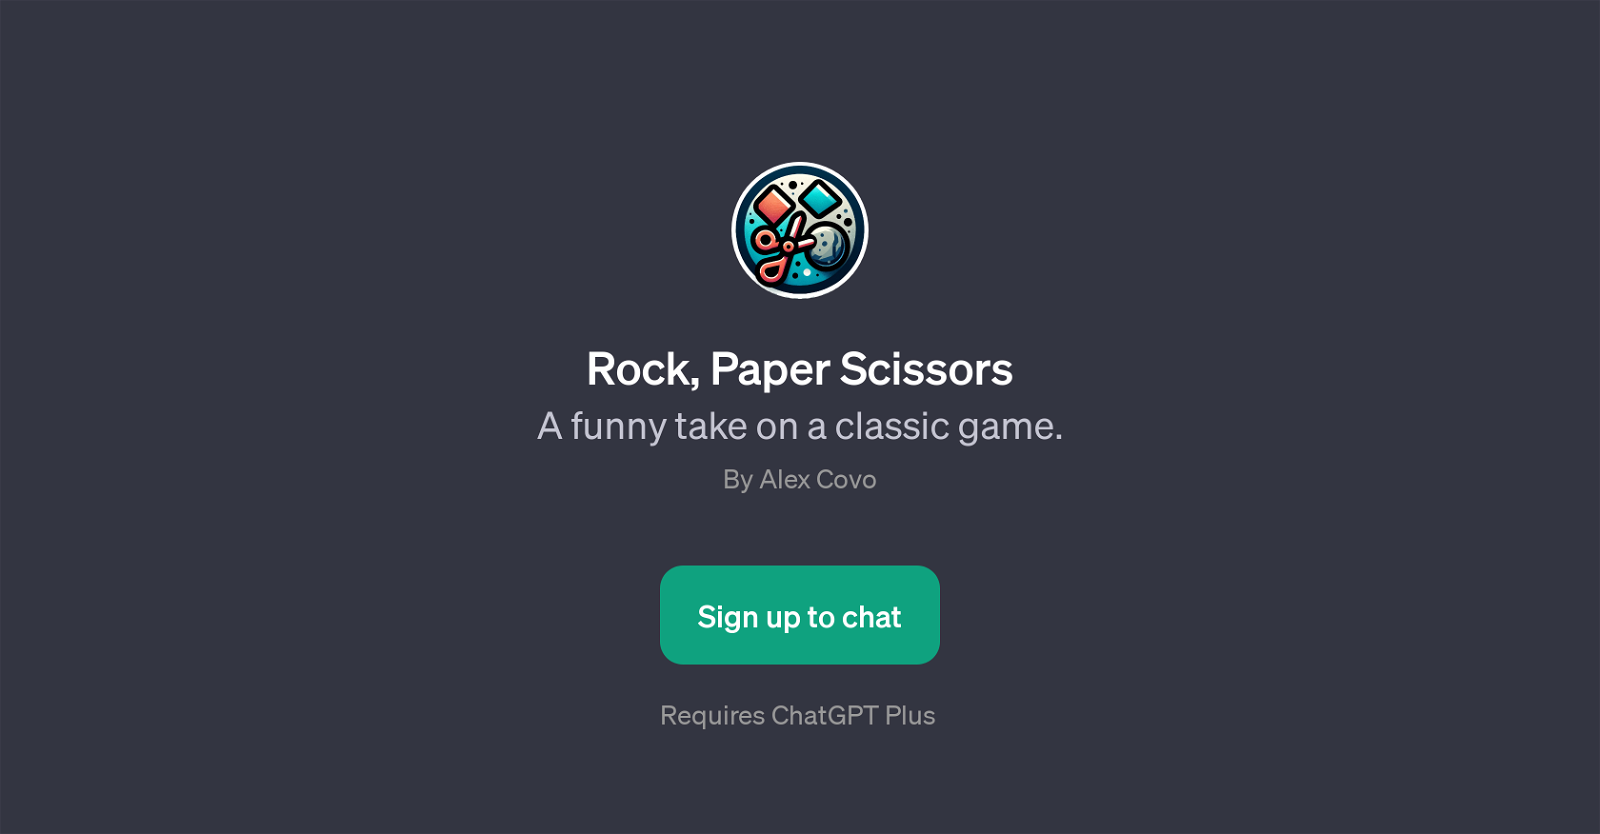 Rock, Paper, Scissors website